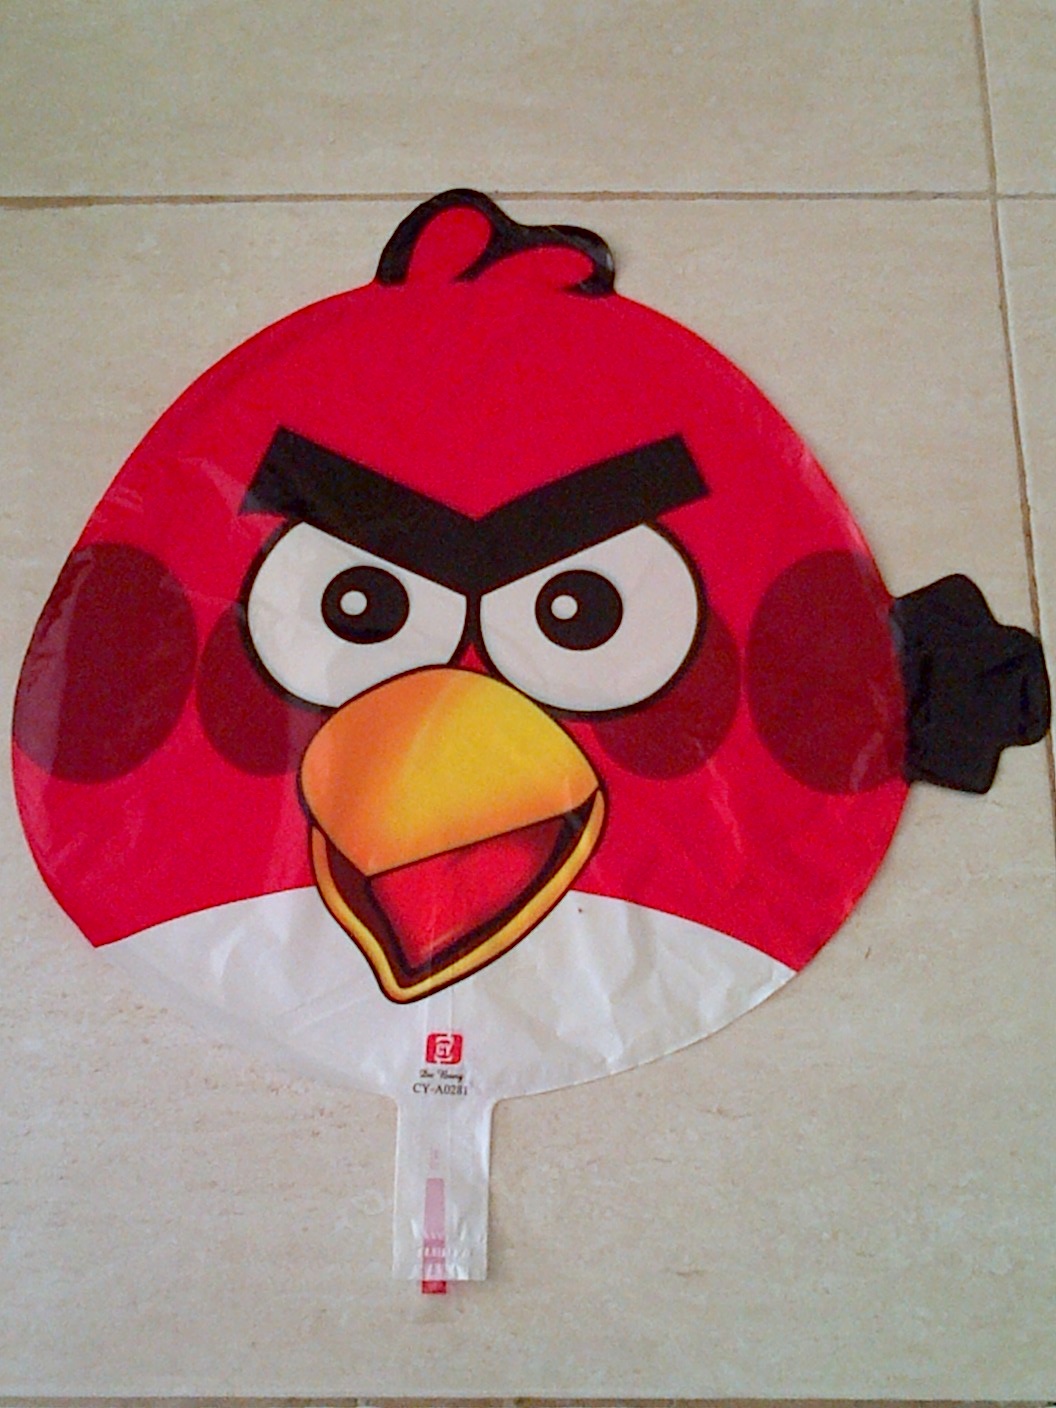 Balon Character Angry Bird Merah Anugerah Utama Toys